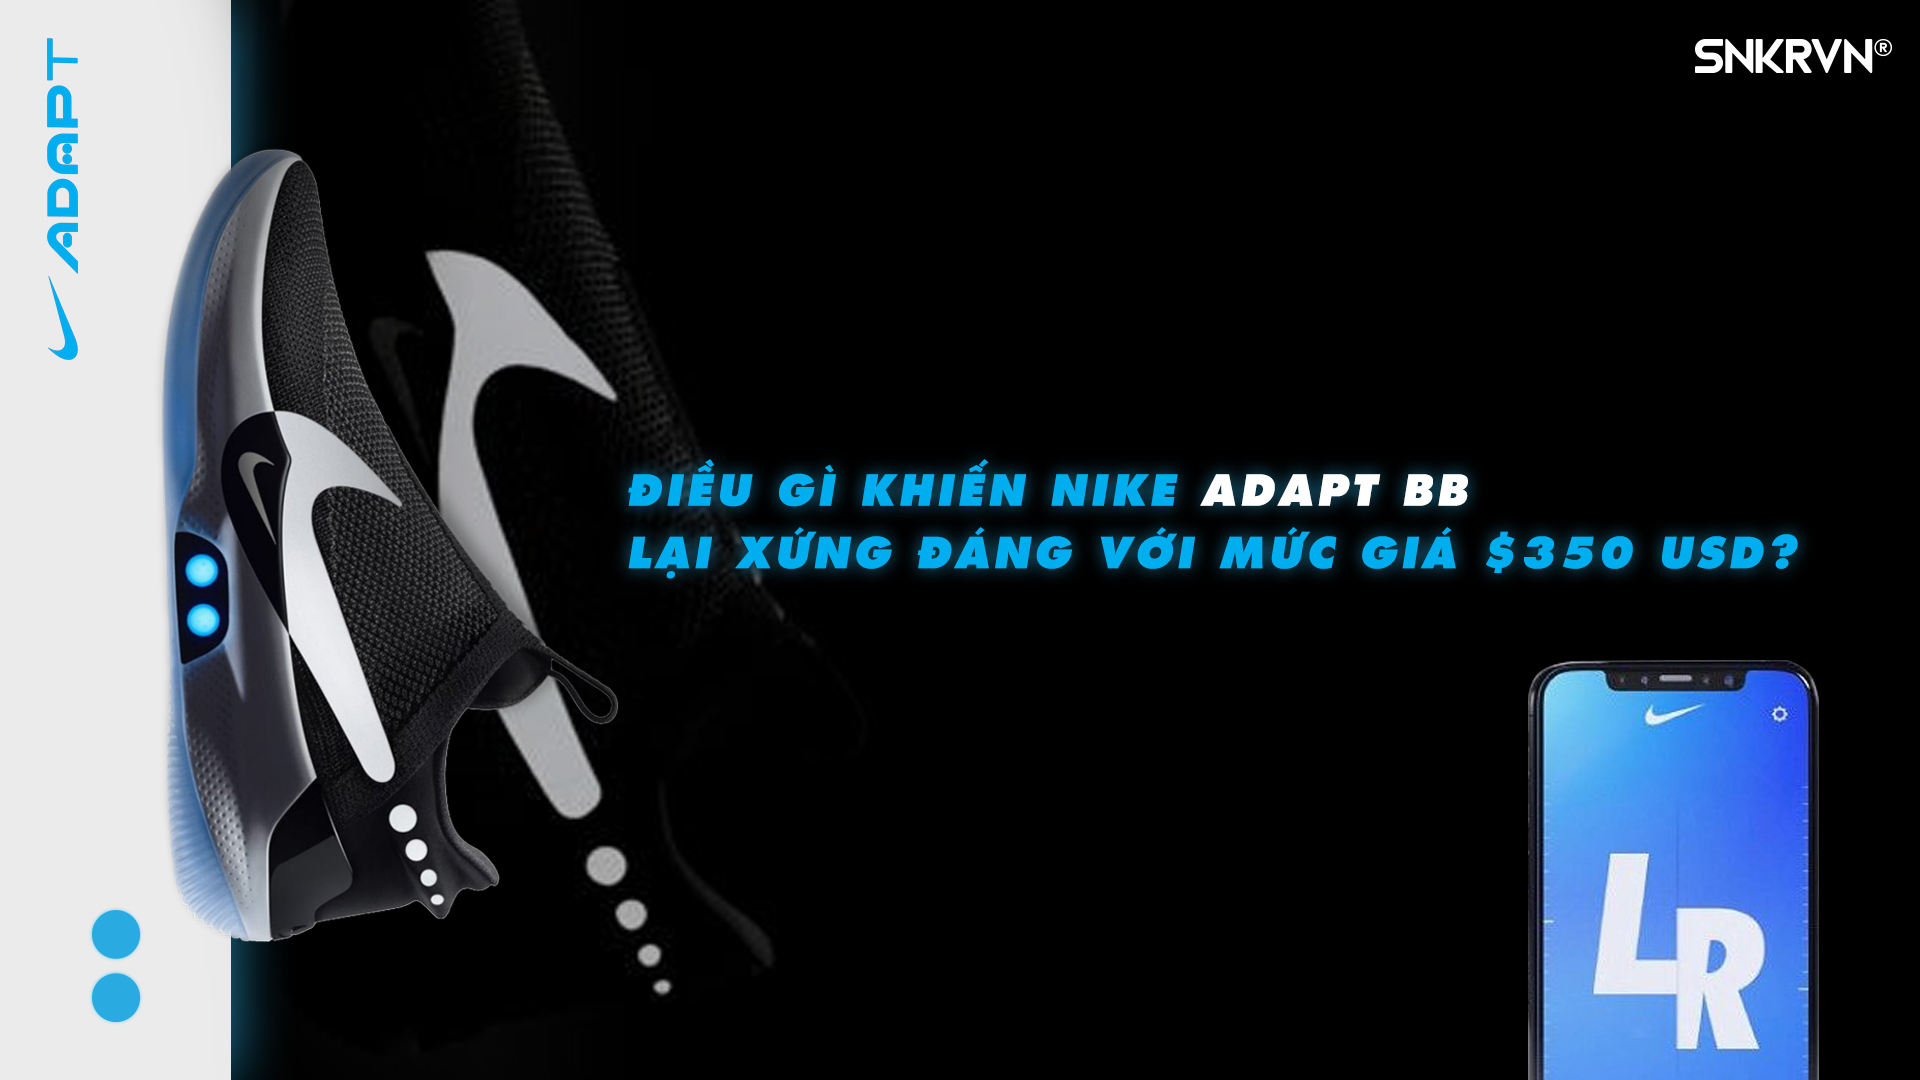 Điều gì khiến Nike Adapt BB lại xứng đáng với mức giá $350 USD?